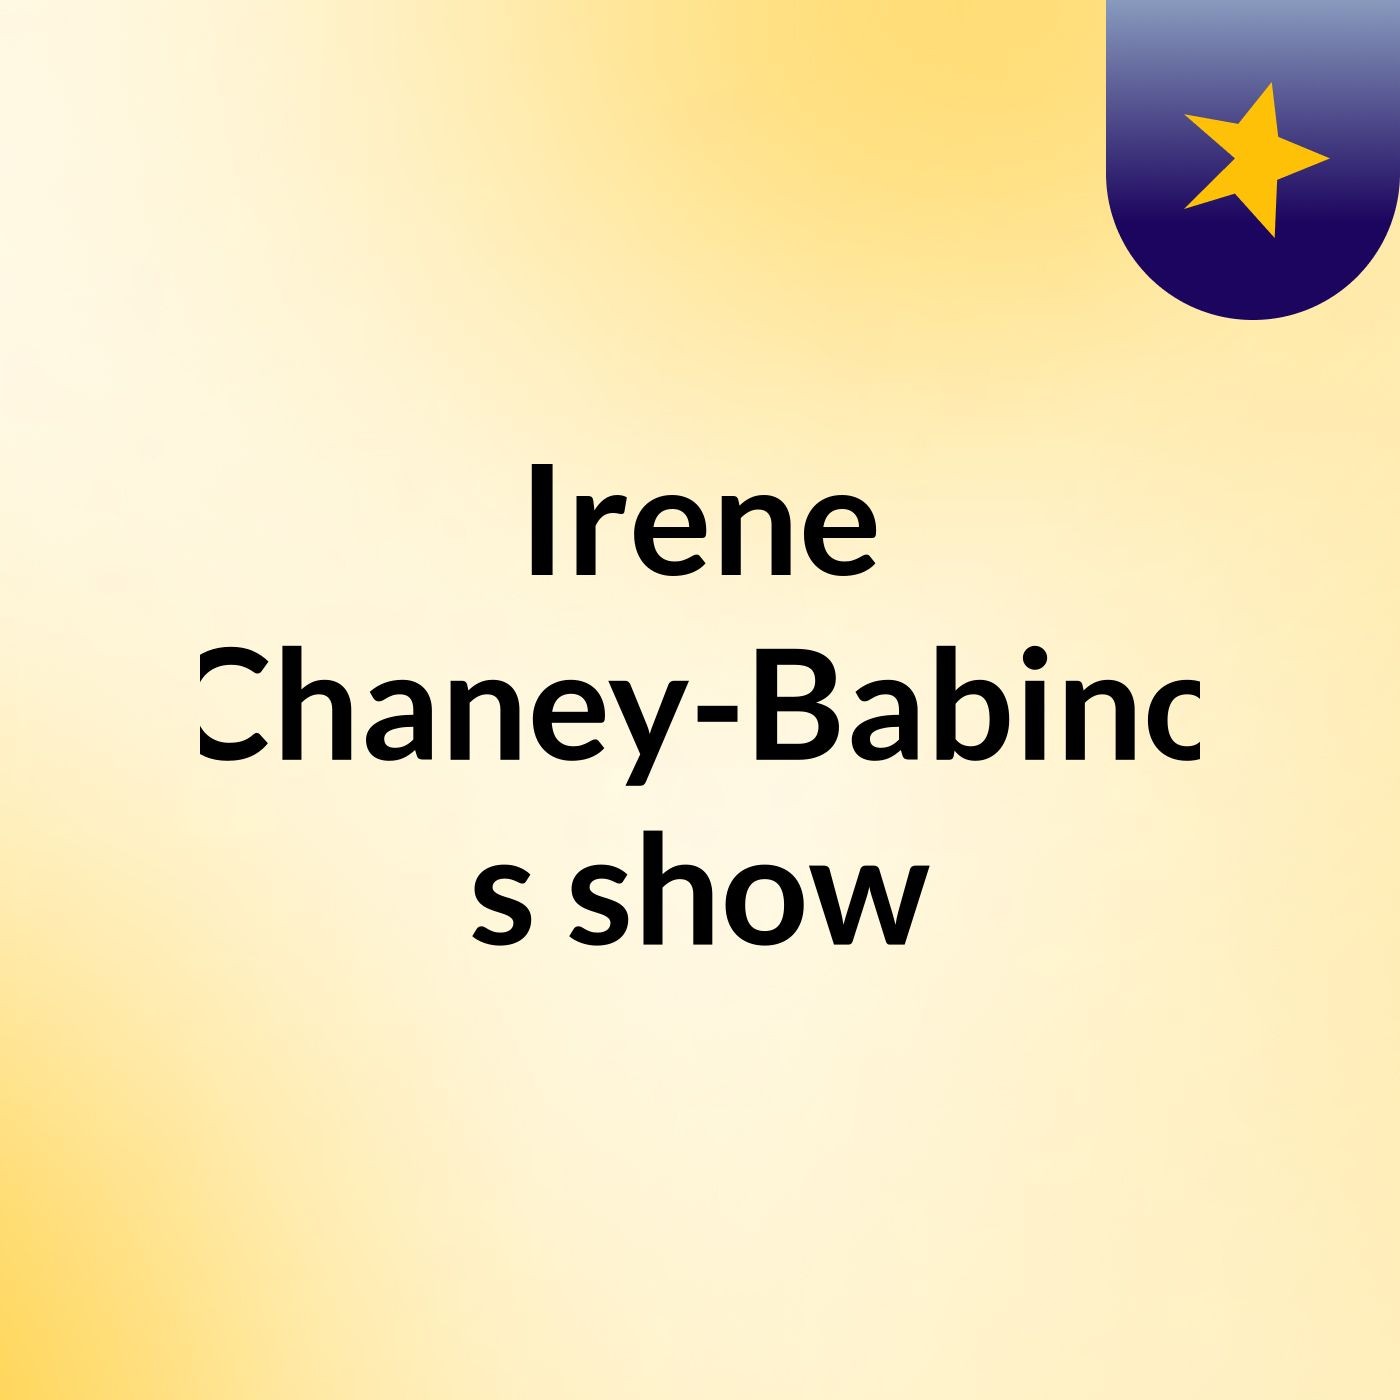 Irene Chaney-Babino's show